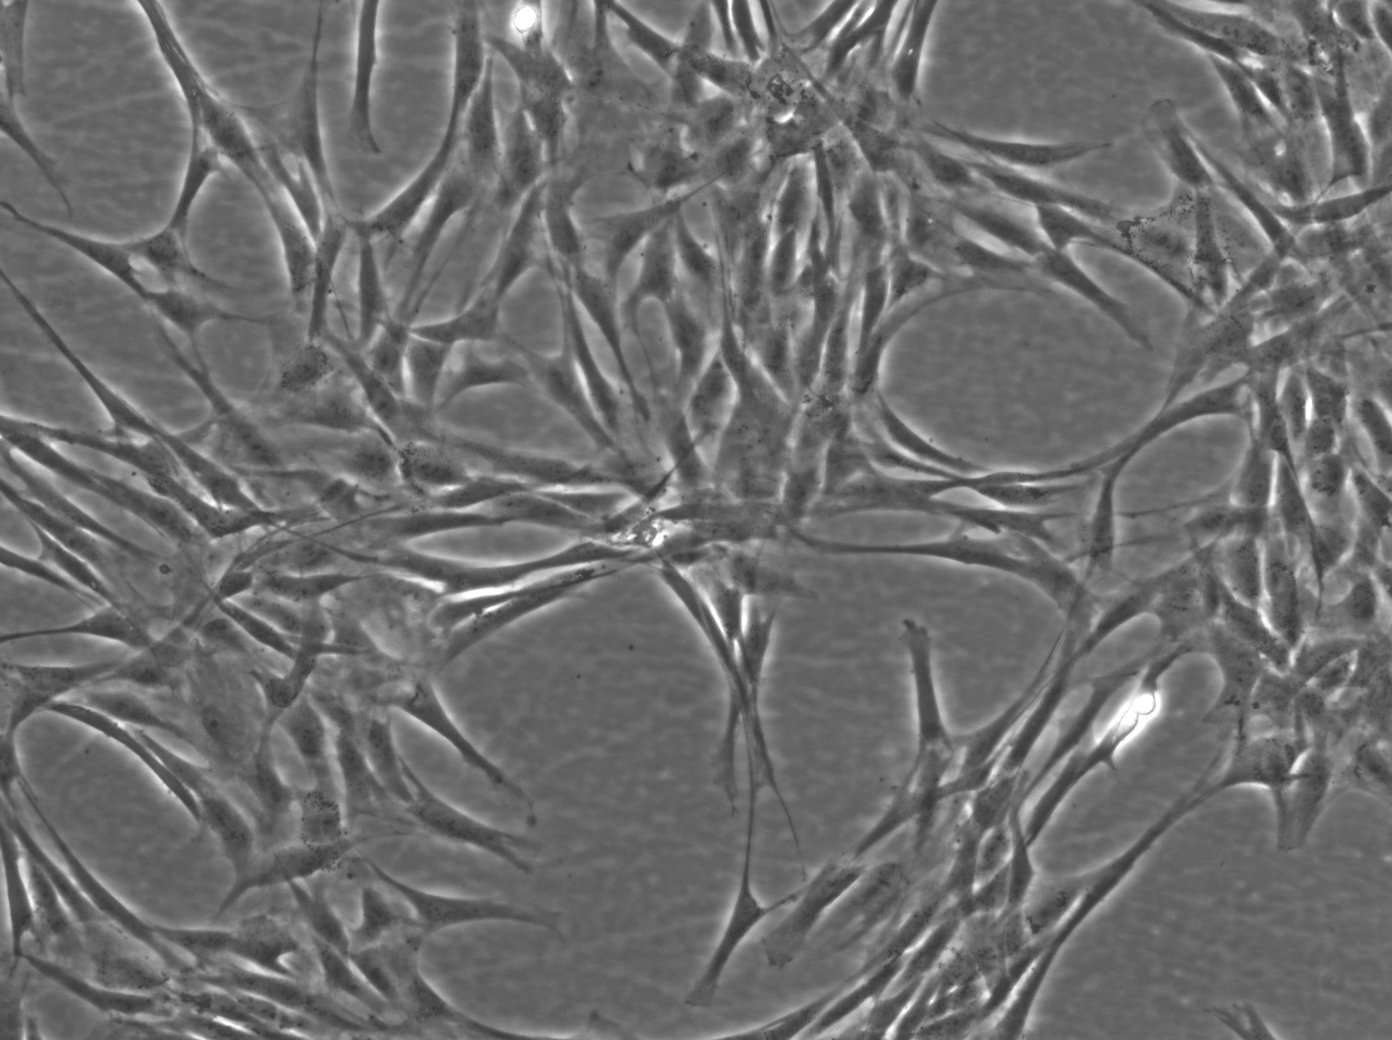 Cellules de fibroblastes de peau humaine (HFFC)